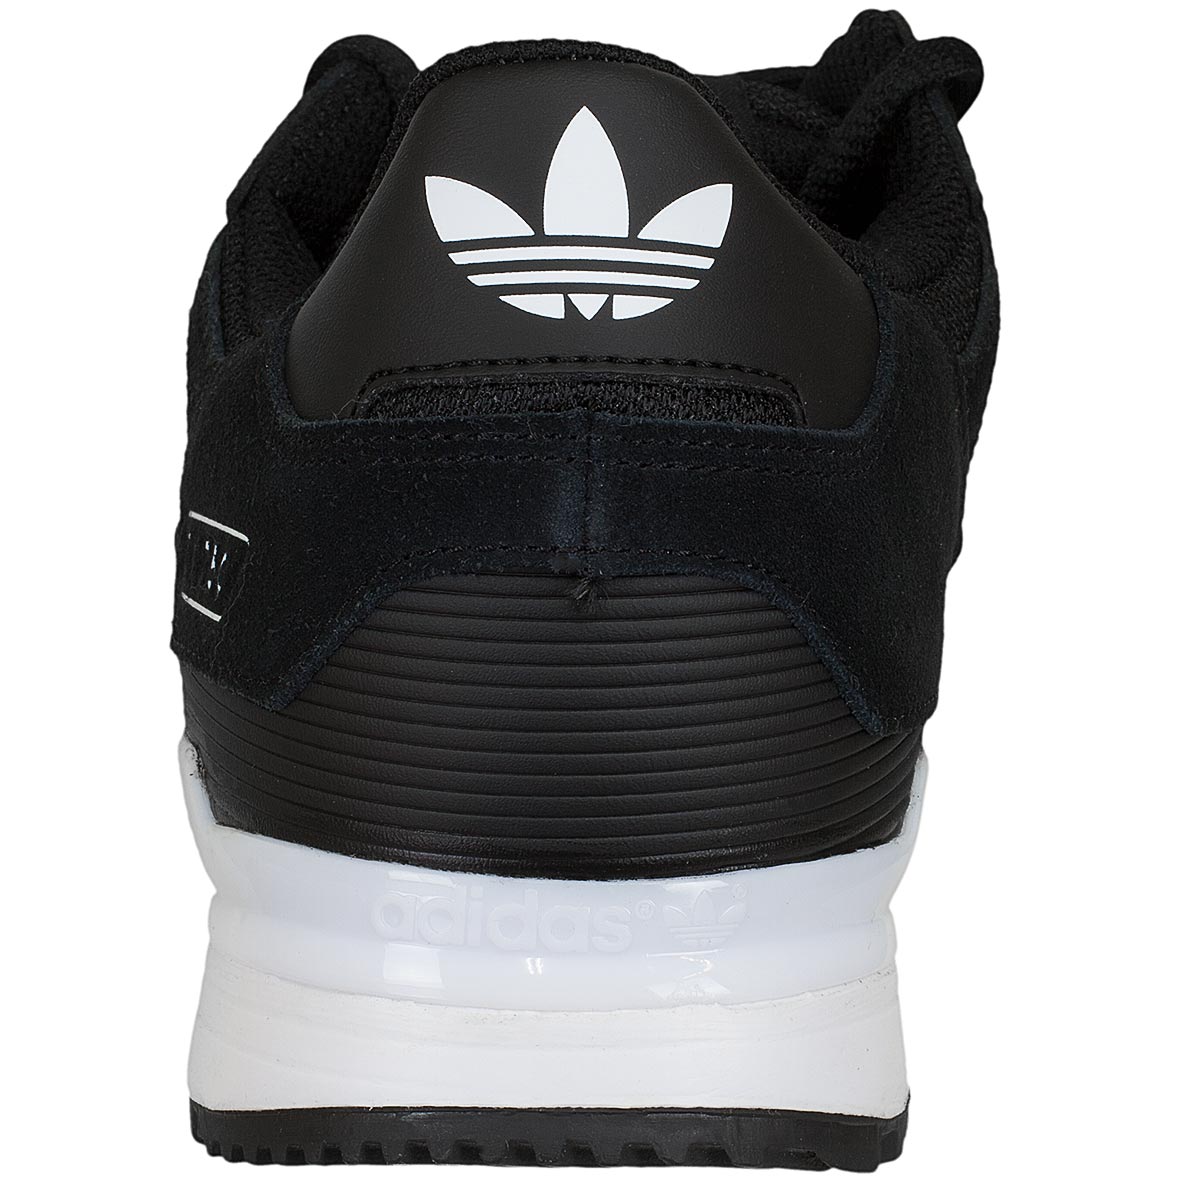 ☆ Adidas Originals Sneaker ZX 750 schwarz/weiß - hier bestellen!